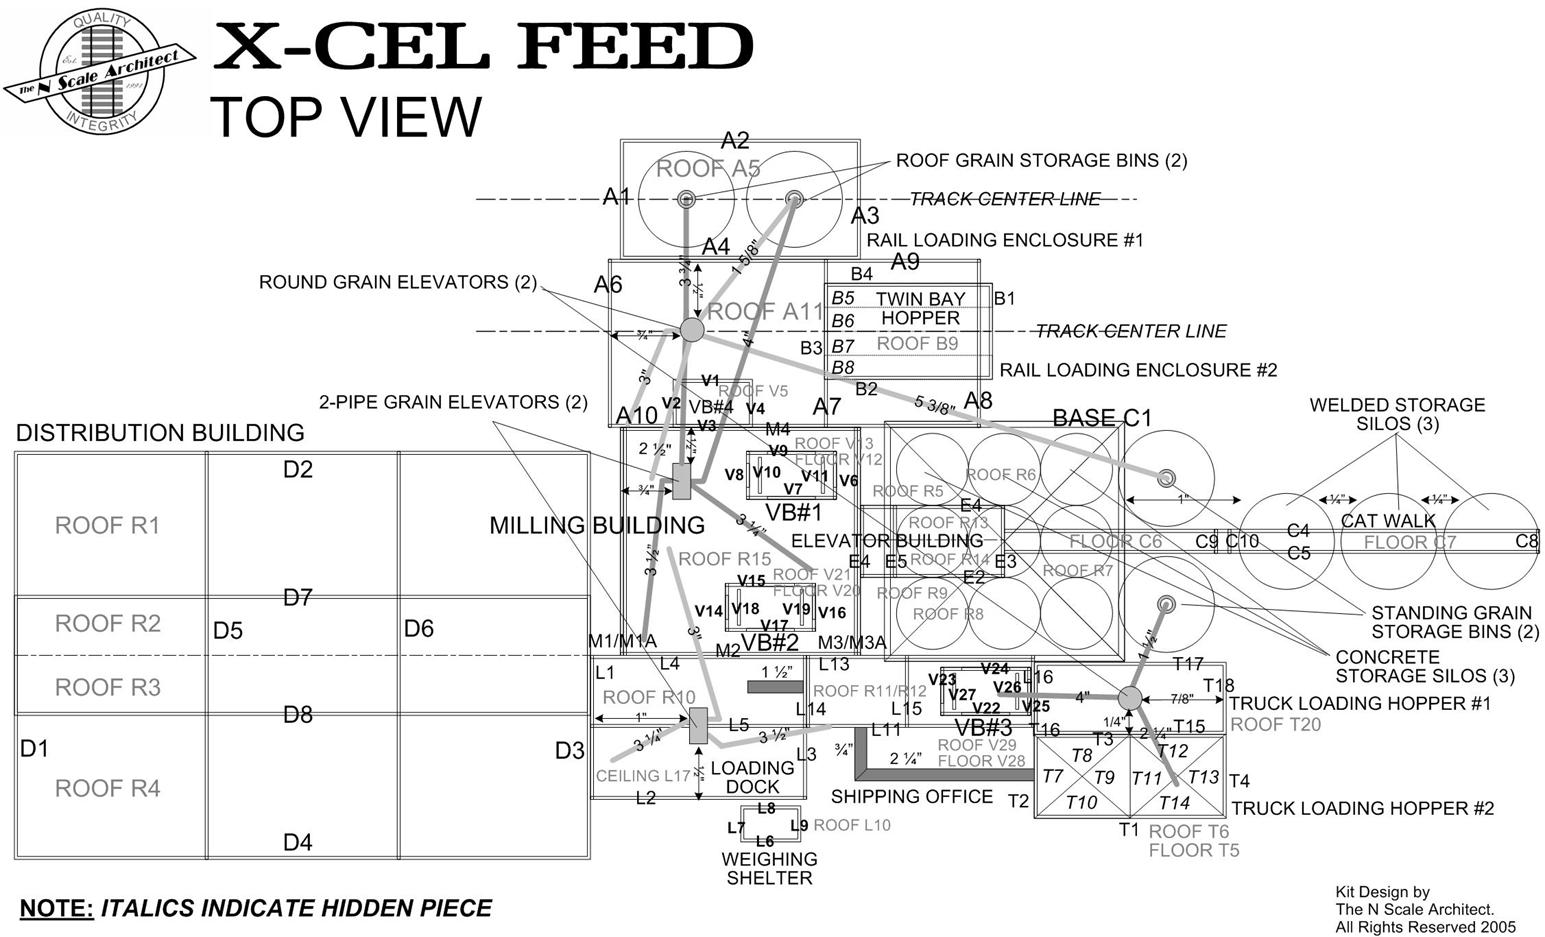 X-Cel Feed - N Floor Plan